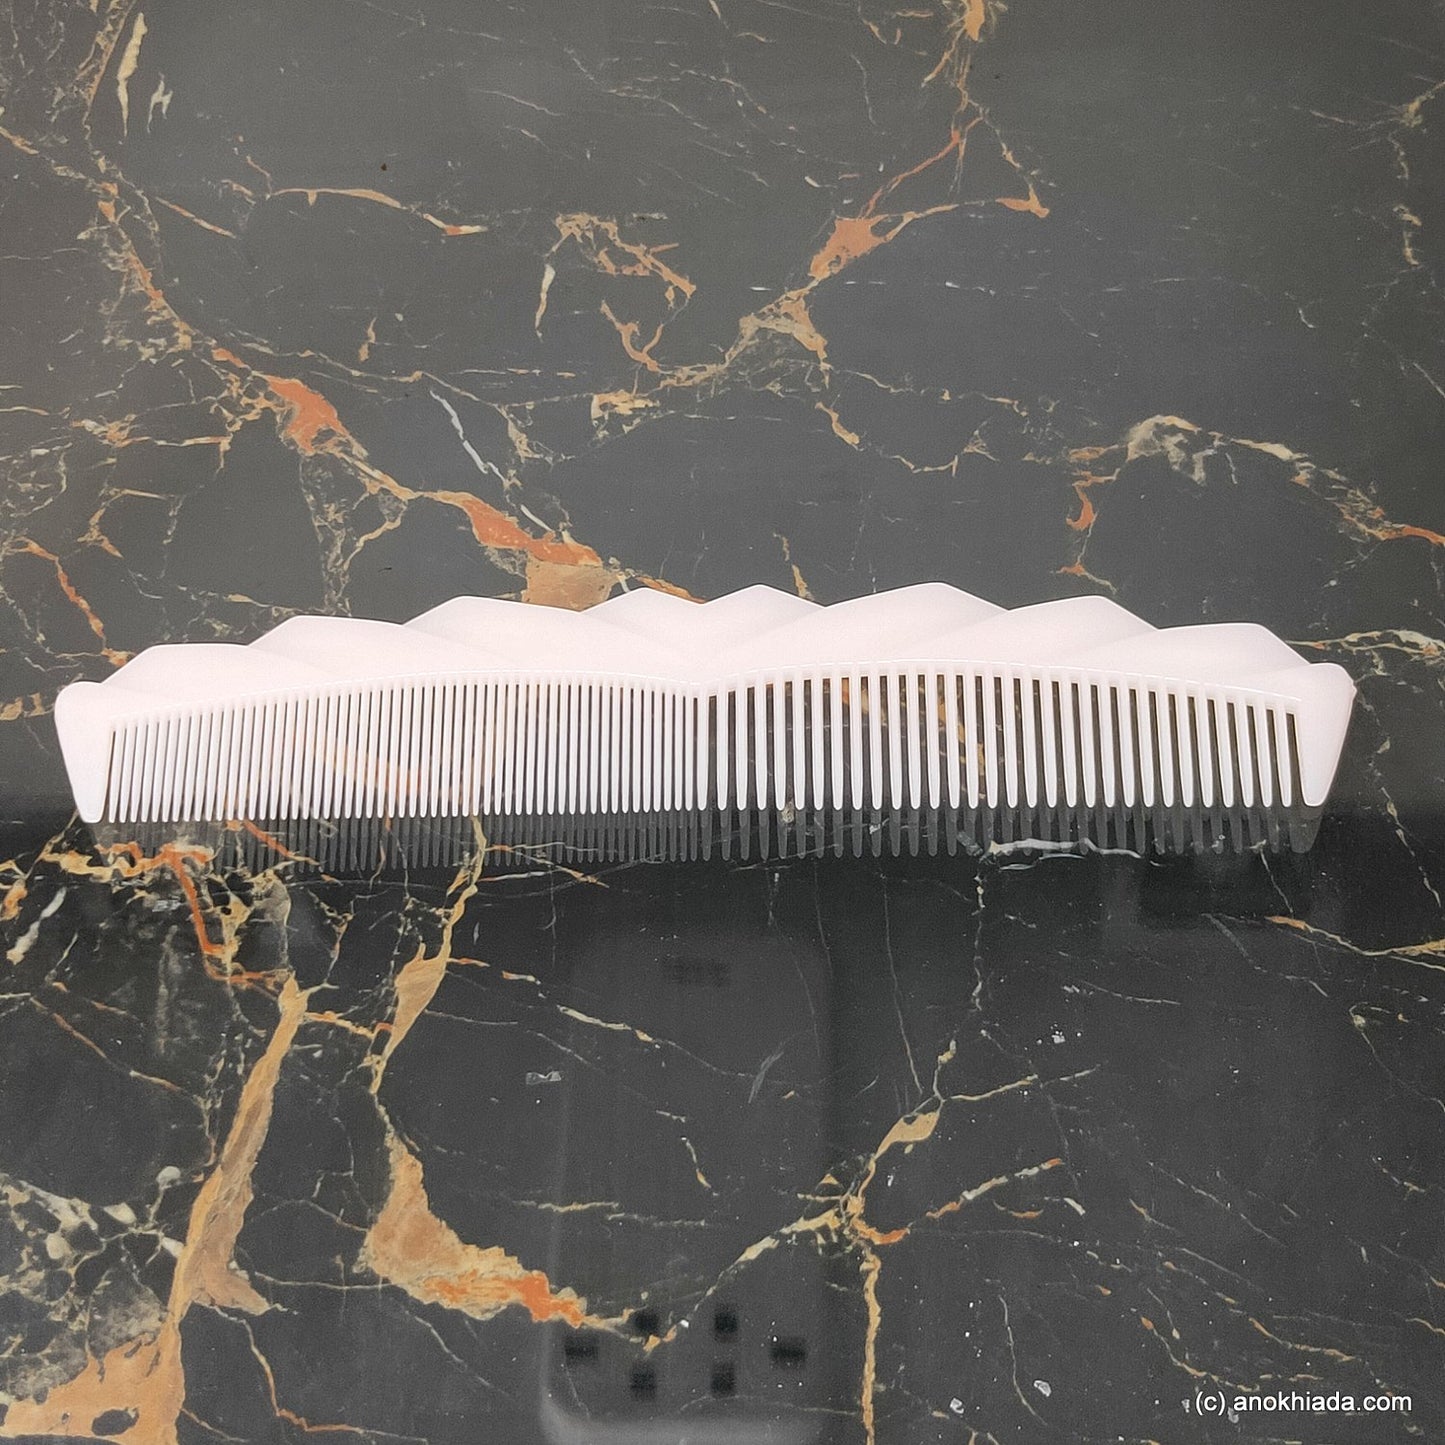 Anokhi Ada Plastic Translucent Comb, 9-inch, White (Comb-040)